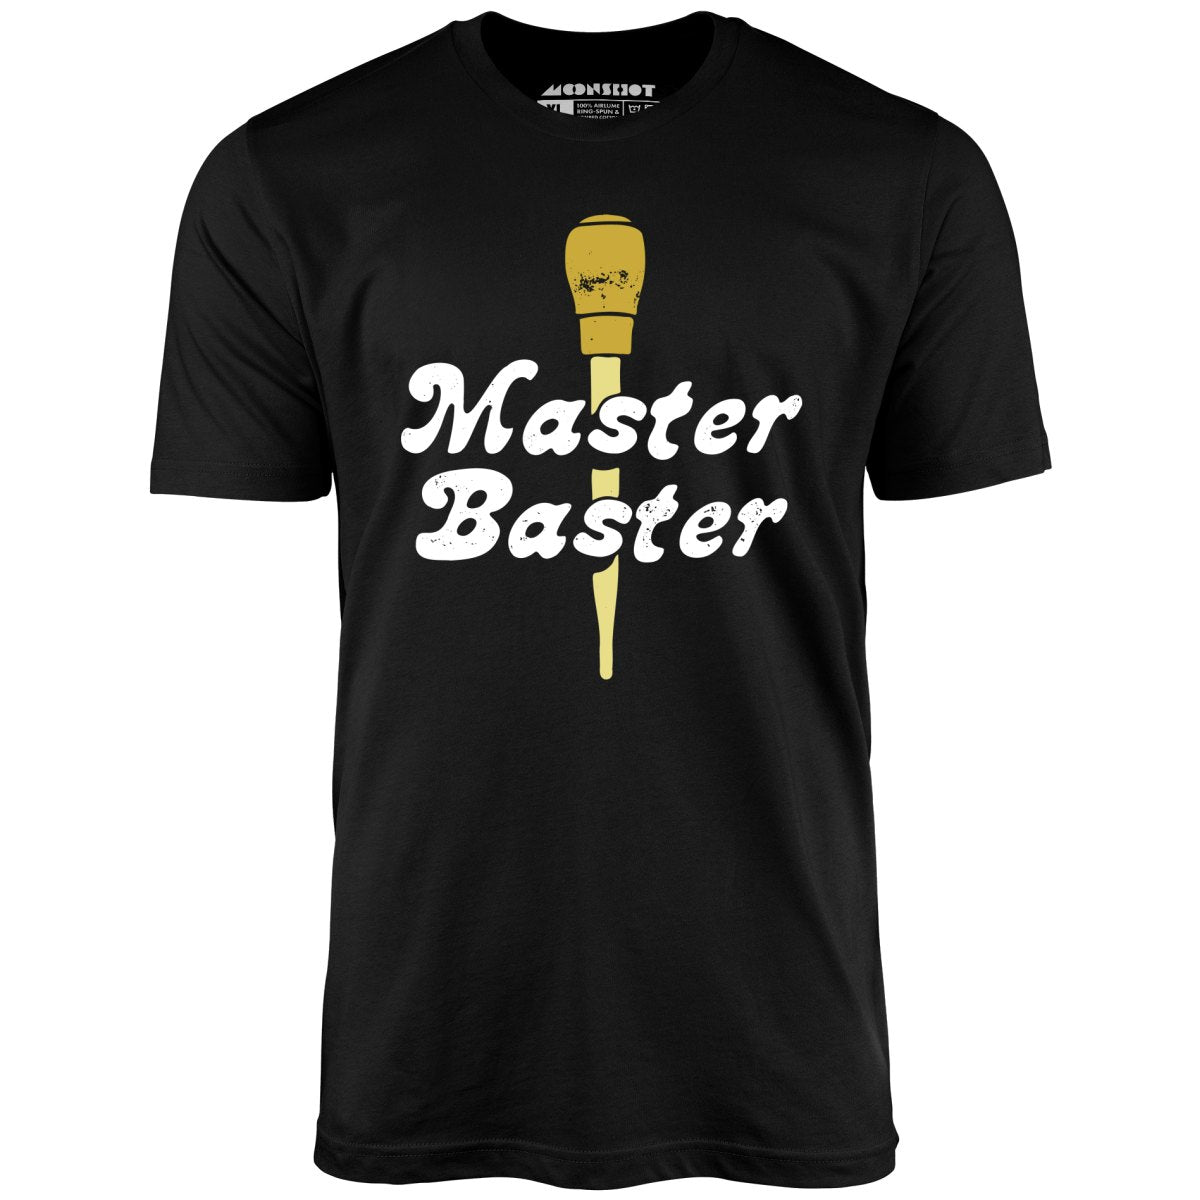 Master Baster - Unisex T-Shirt